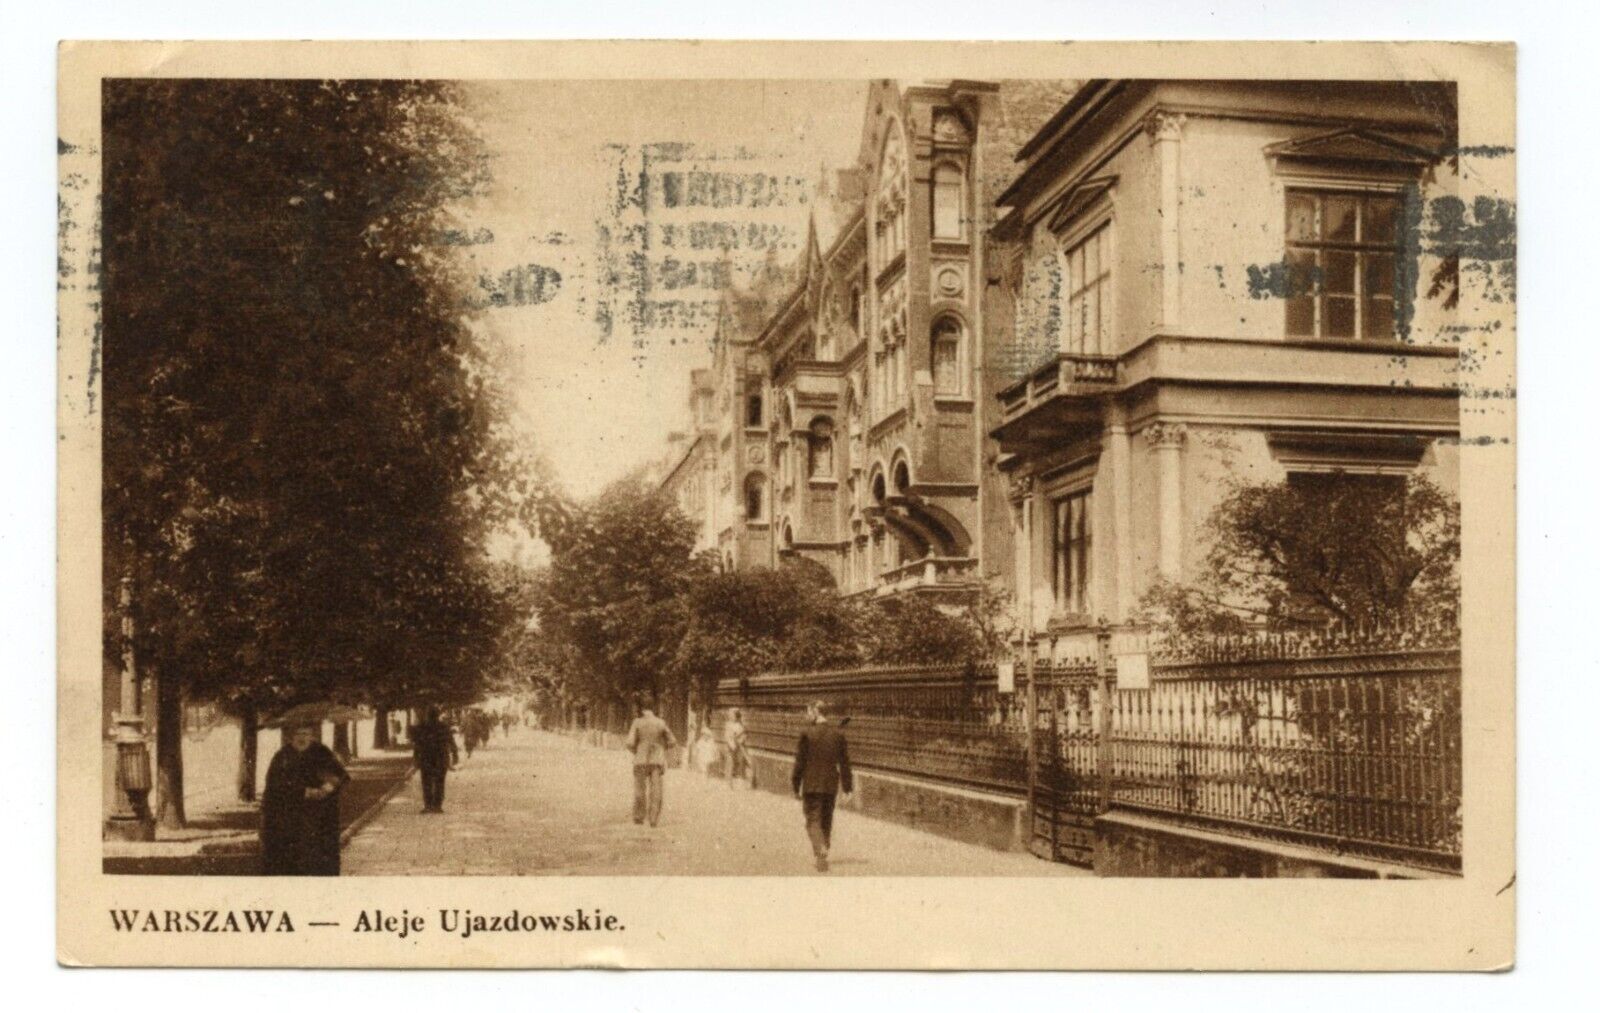 Warszawa Aleje Ujazdowskie Warsaw Poland Street View Postcard